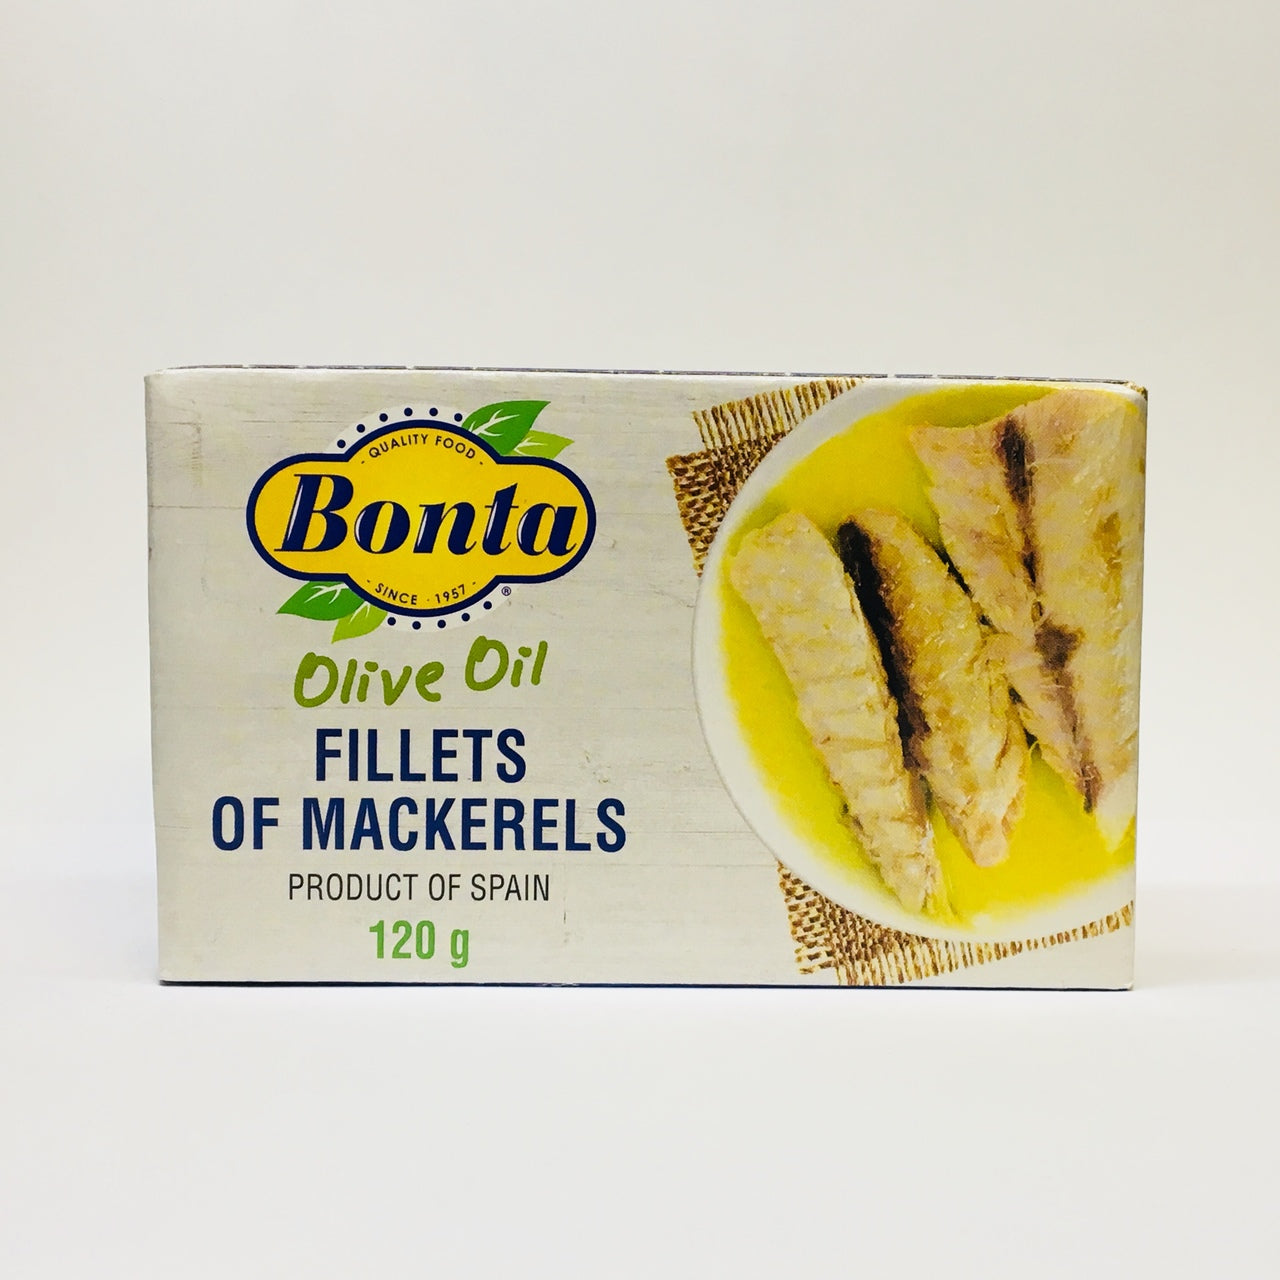 Bonta Fillets of Mackerels In Olive Oil (120g) - Lifestyle Markets